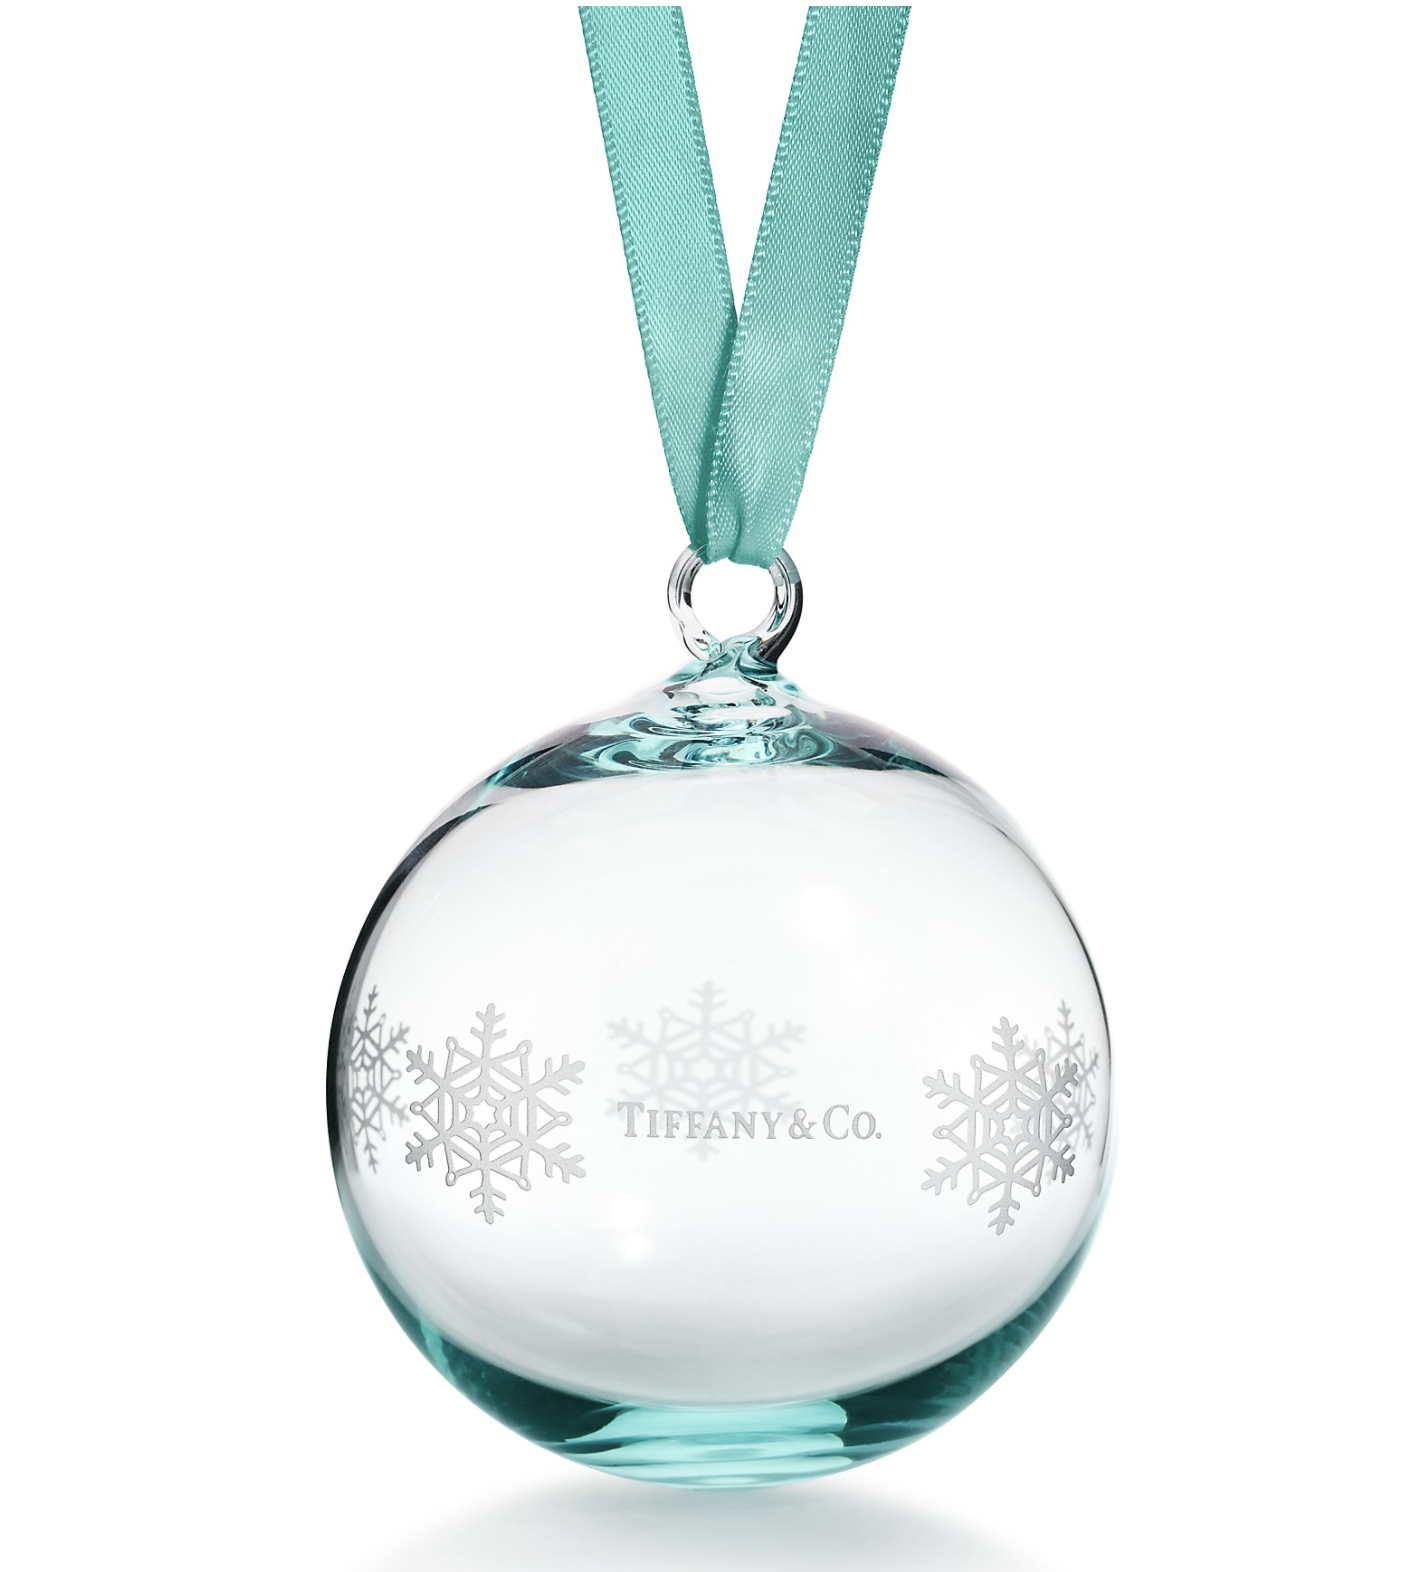 Bola de Navidad de Tiffany/Foto: Tiffany